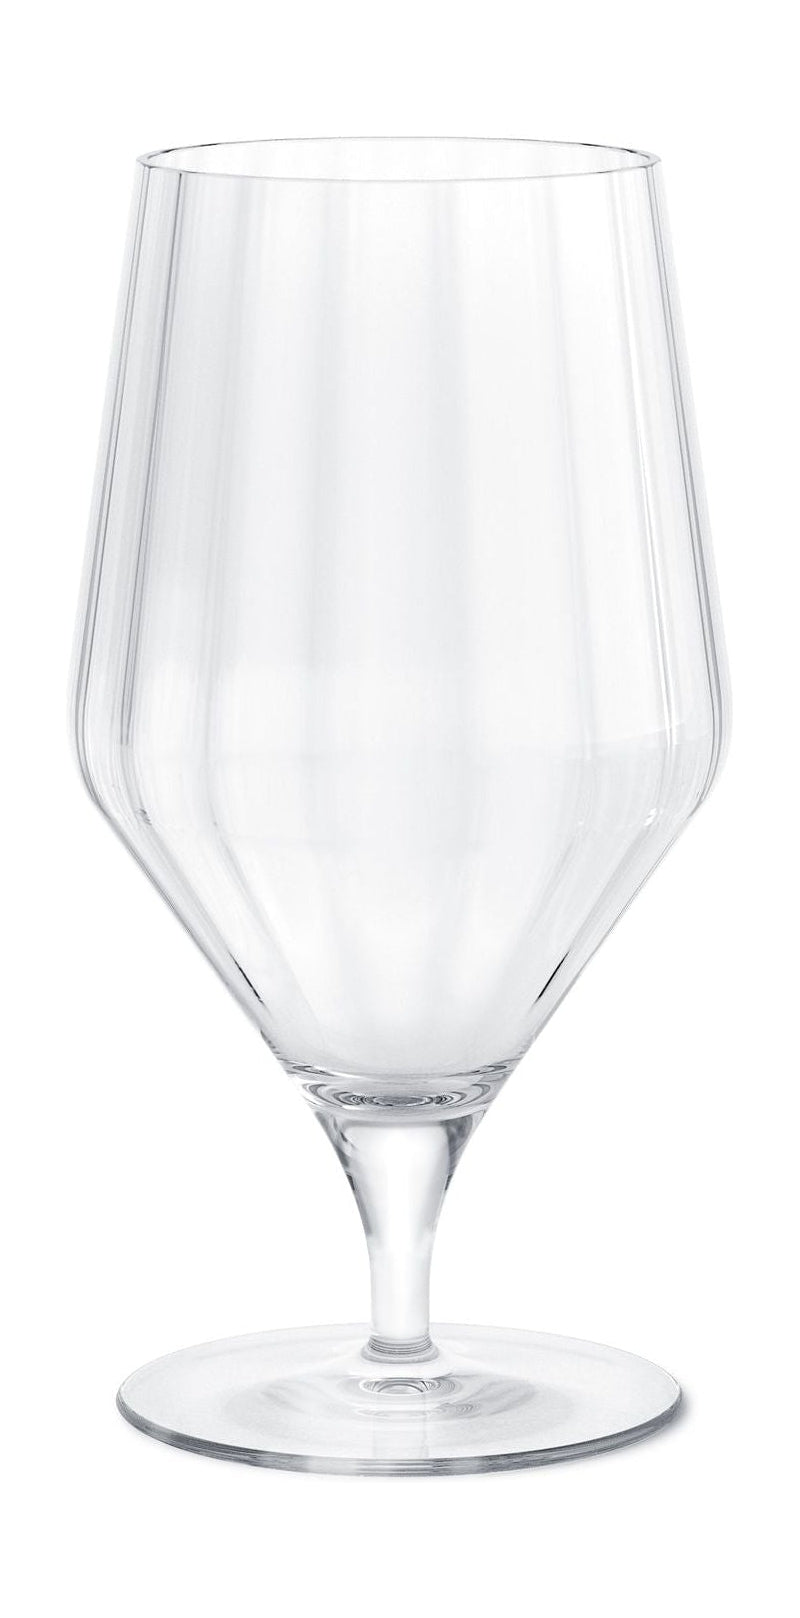 Georg Jensen Bernadotte Beer Glass 45 Cl, 6 Pcs